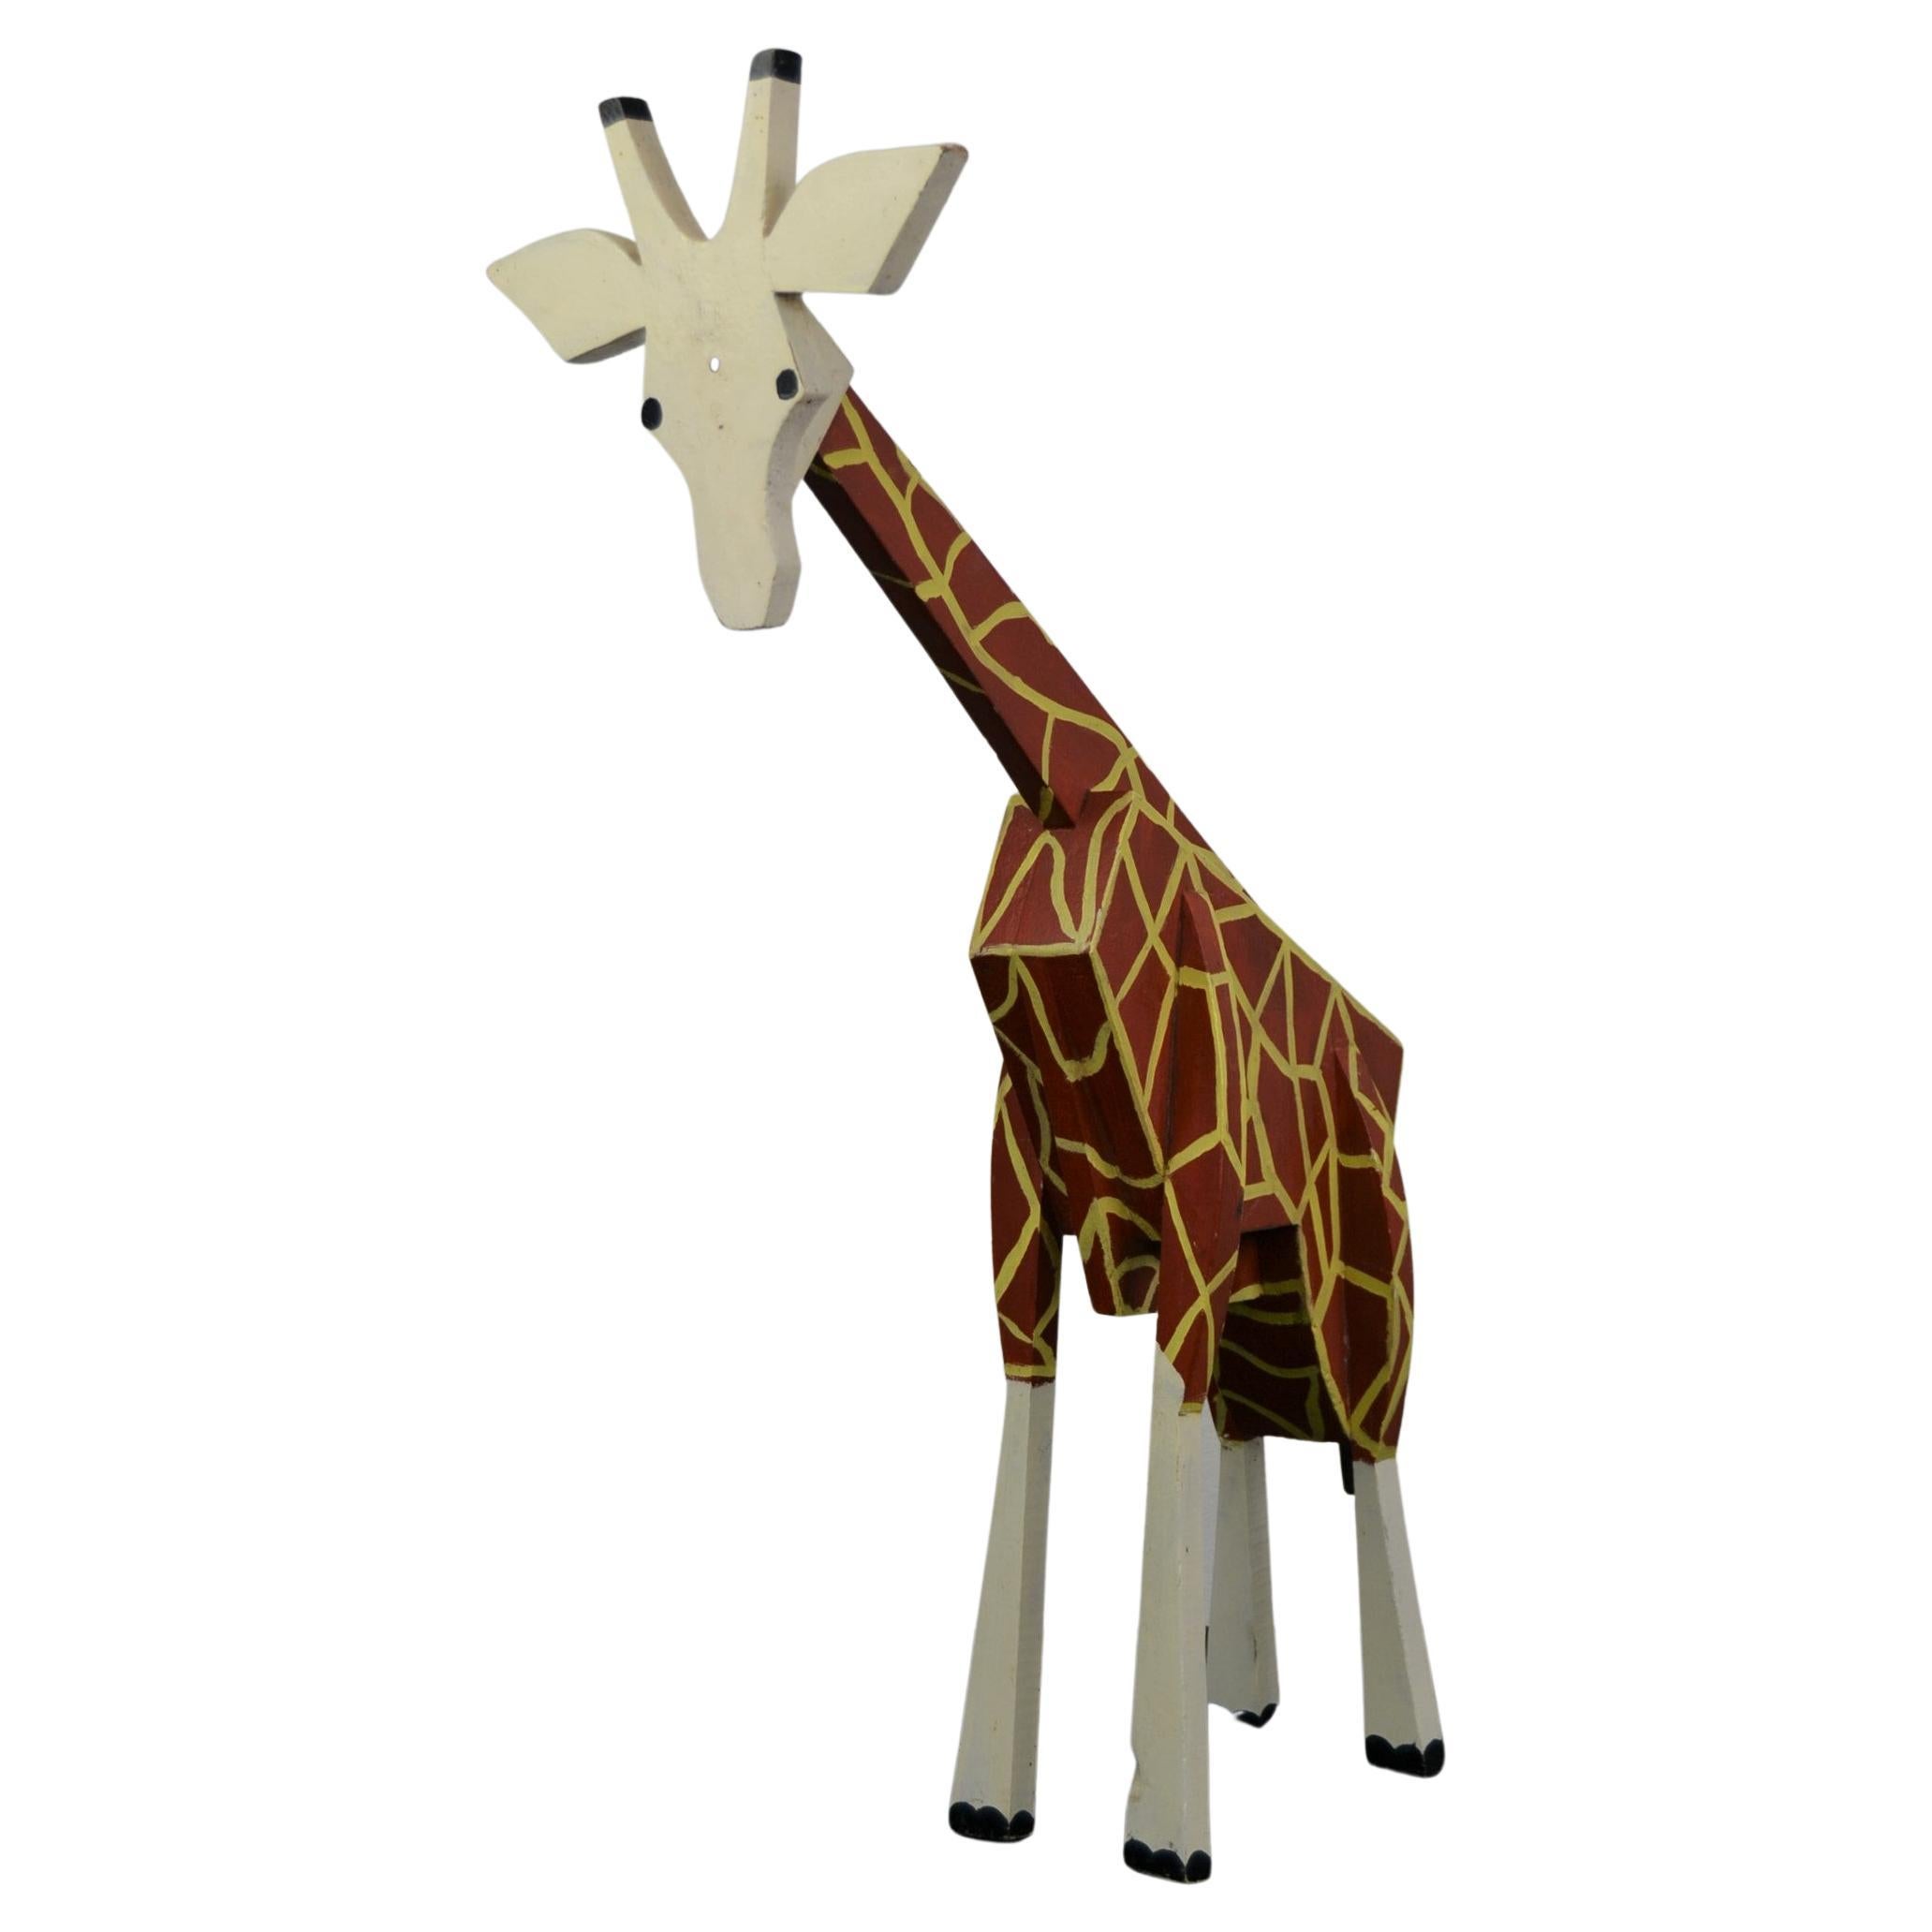 Wooden Giraffe Sculpture Carnival Art Folk Art